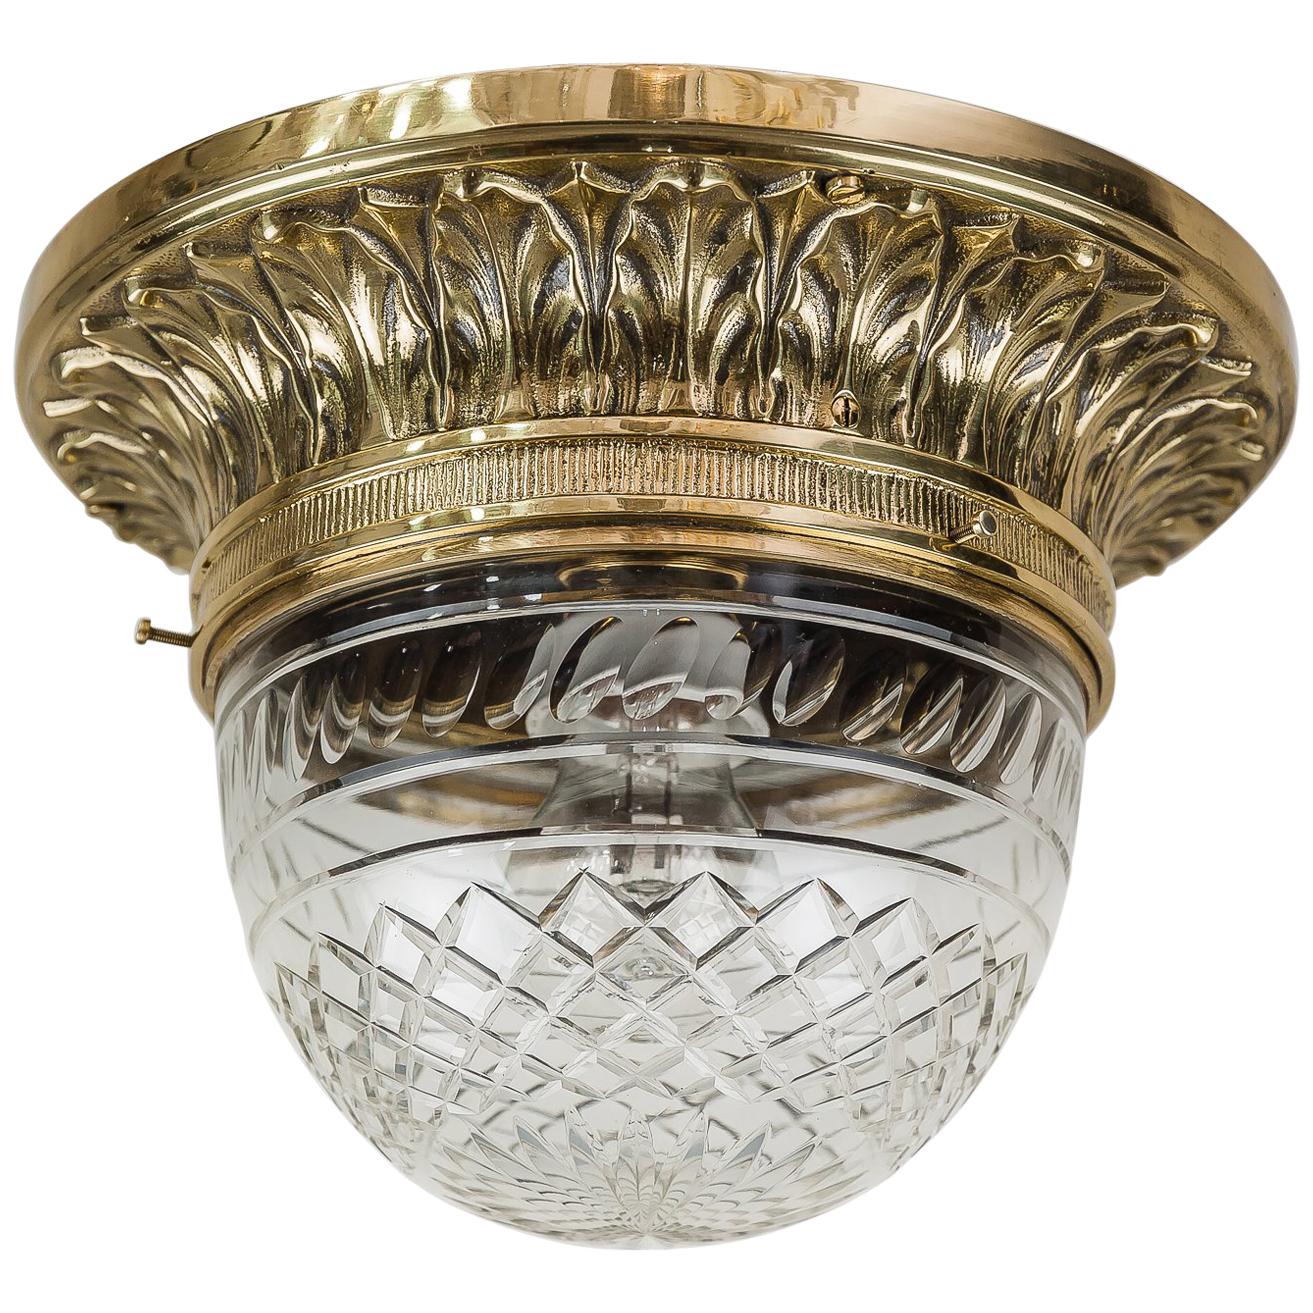 Solid Jugendstil Ceiling Lamp with Original Cut-Glass